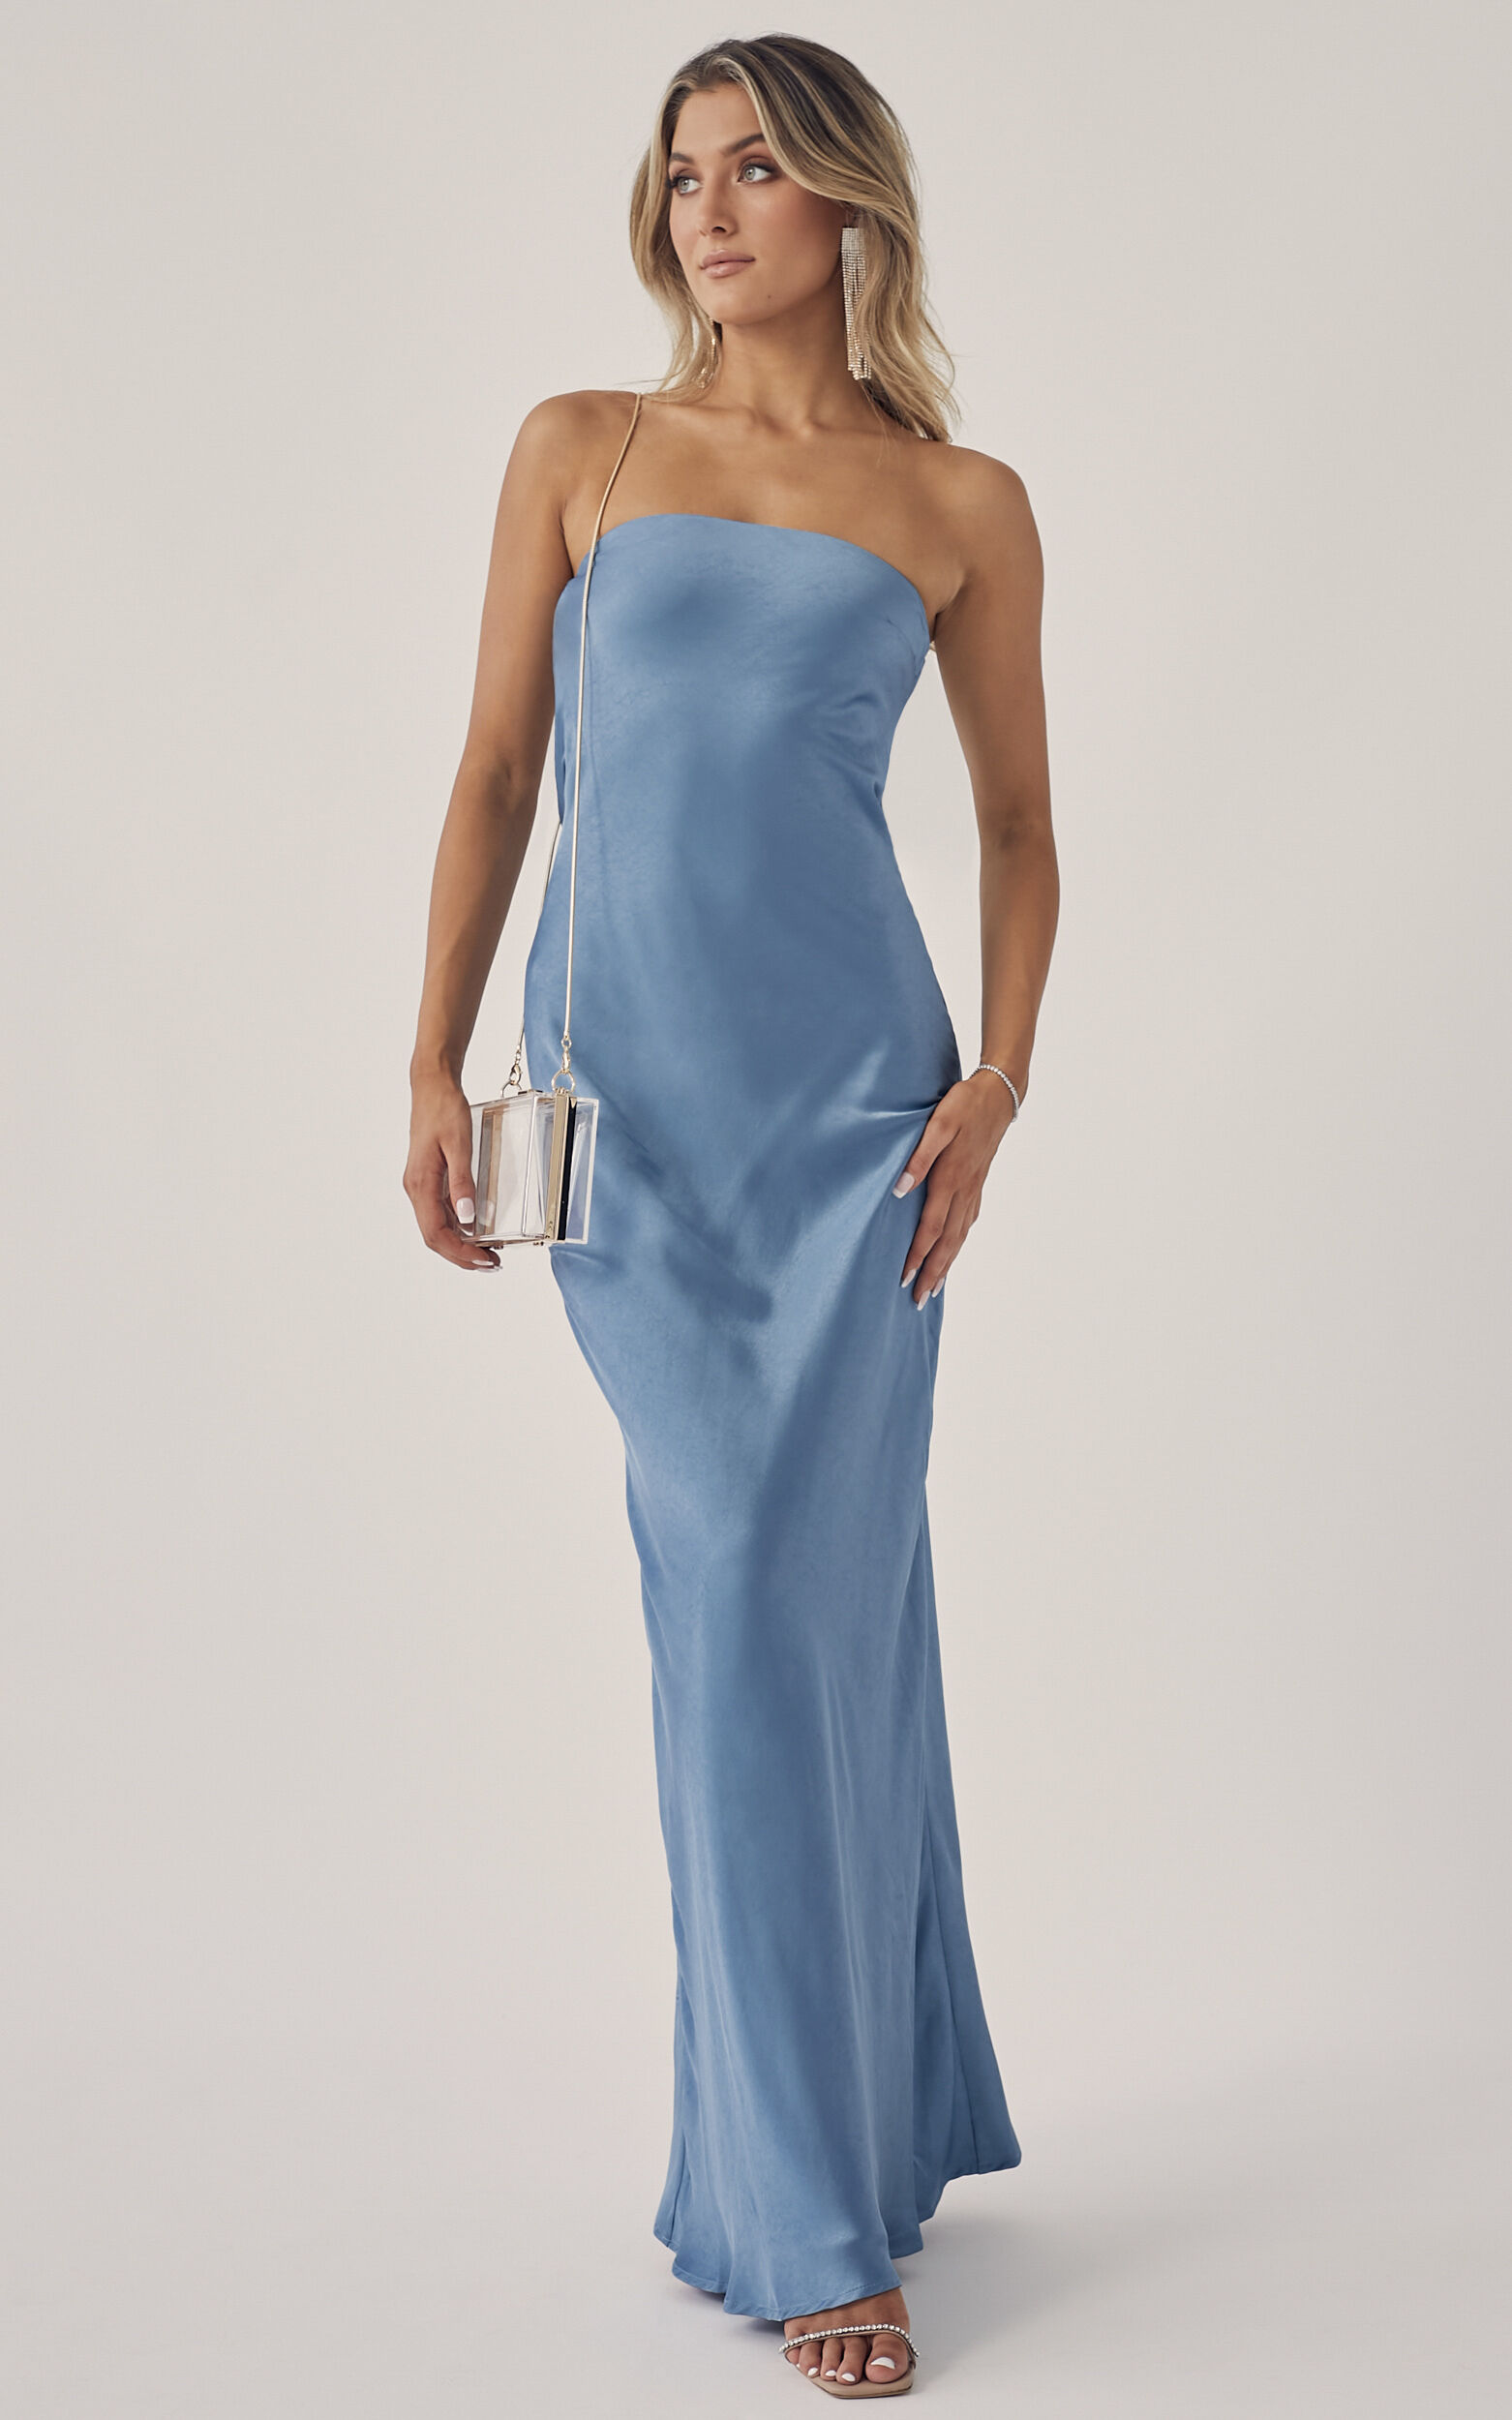 Charlita Maxi Dress - Strapless Cowl Back Satin Dress in Steel Blue ...